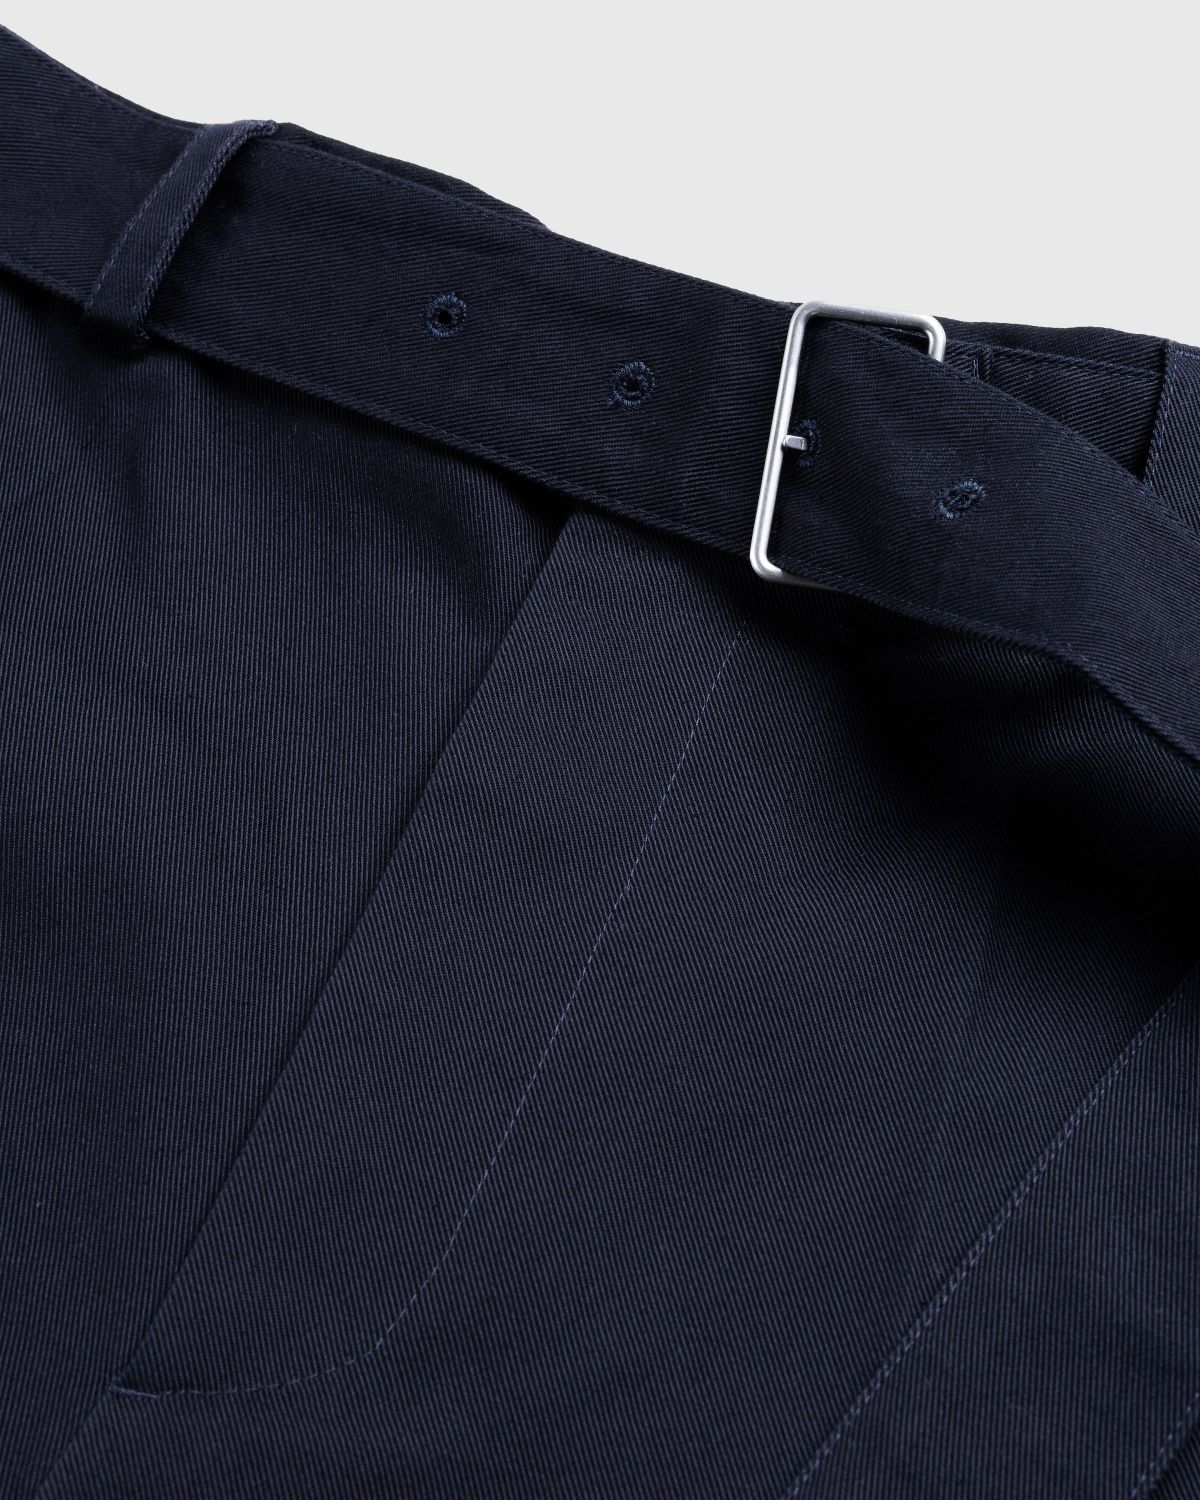 Jil Sander – Belted Shorts Navy - Shorts - Blue - Image 5